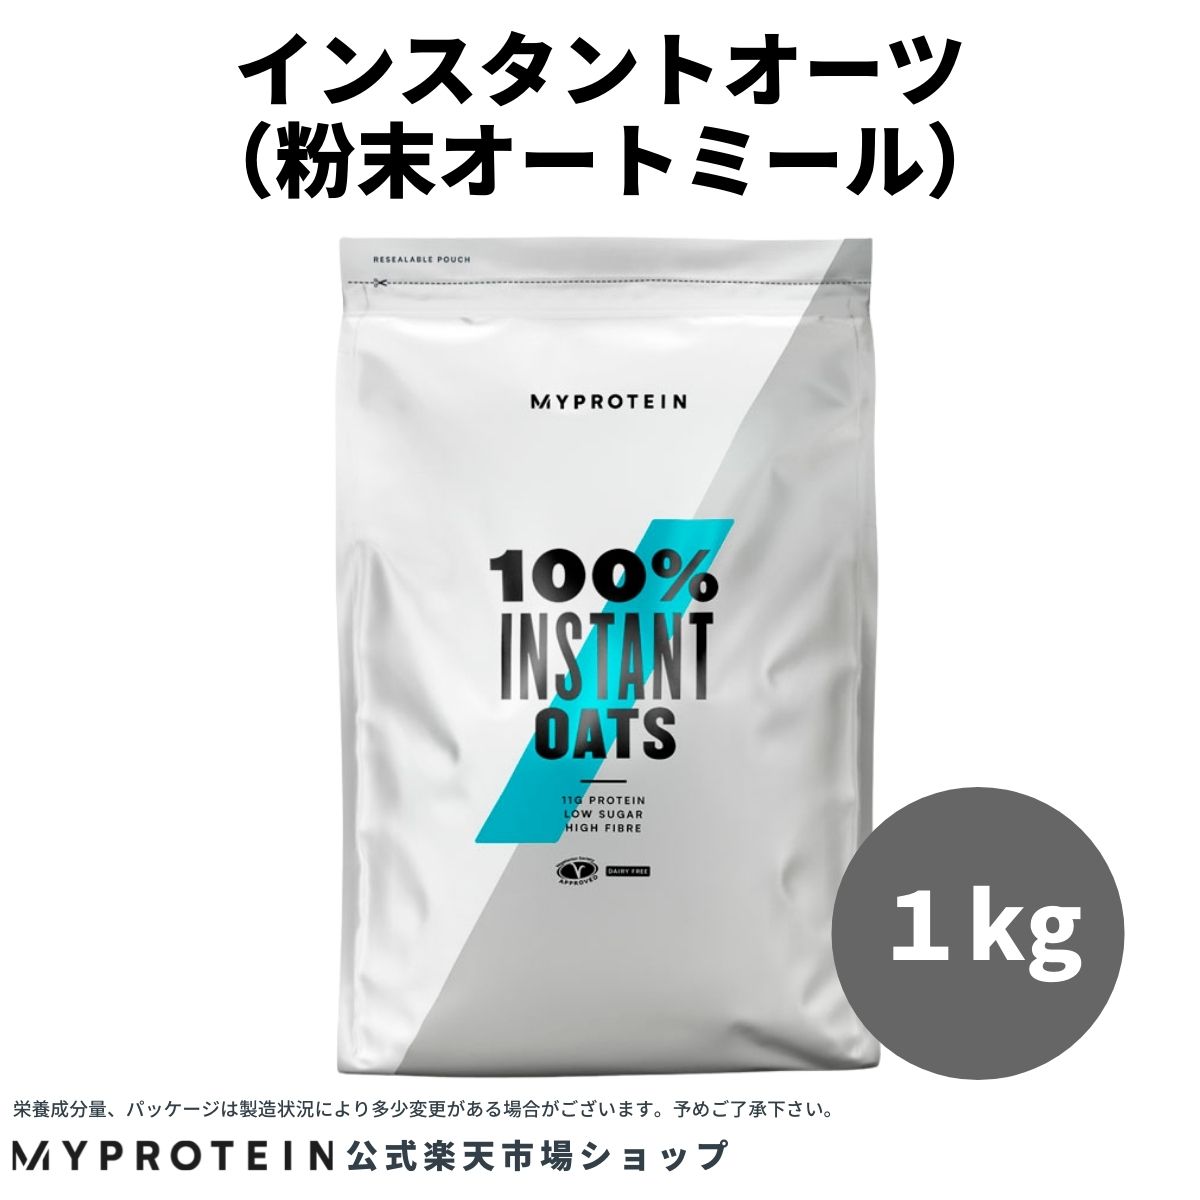 楽天市場 マイプロテイン 公式 Myprotein インスタント オーツ 1kg 約10食分 楽天海外直送 マイプロテイン 楽天市場店